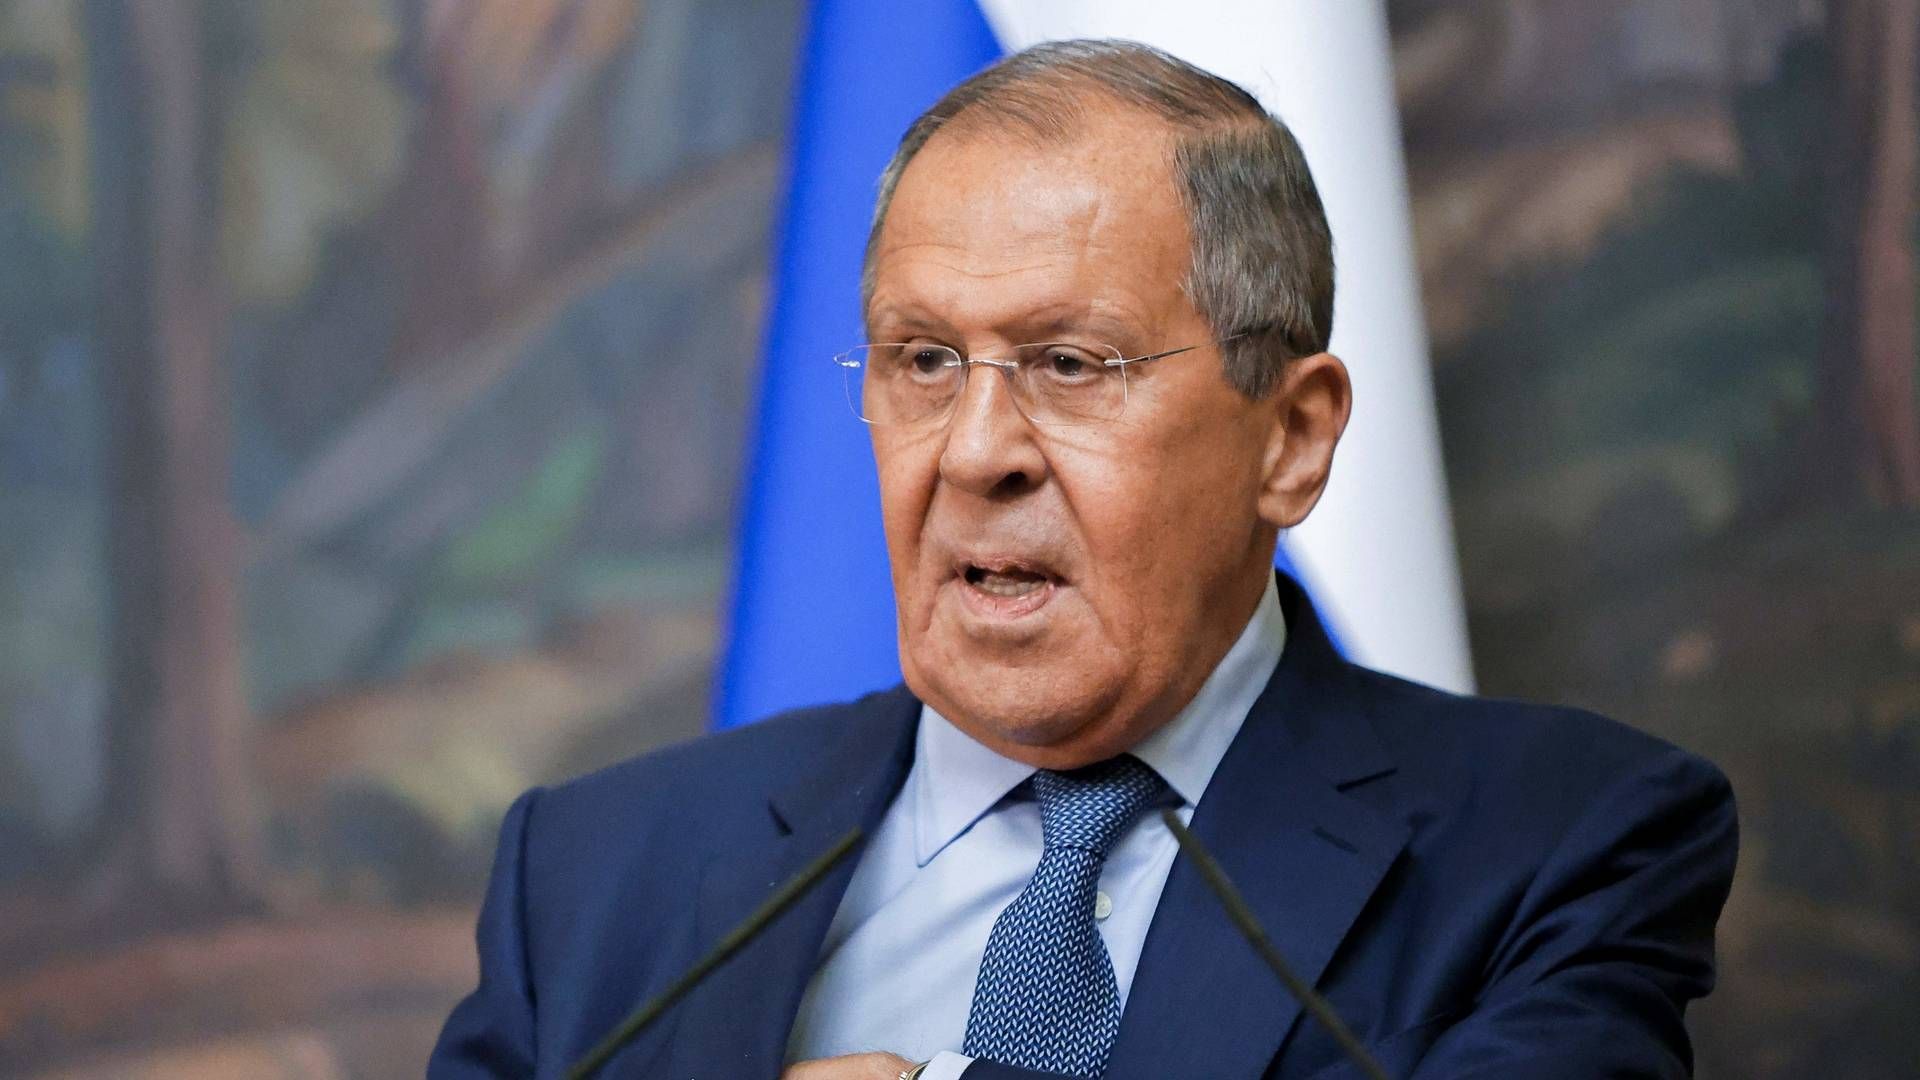 Den russiske udenrigsminister Sergej Lavrov mener, at vestens sanktioner mod Rusland også rammer eksport af fødevarer, som ellers ikke er sanktionerede. | Foto: Maxim Shemetov/AFP / POOL